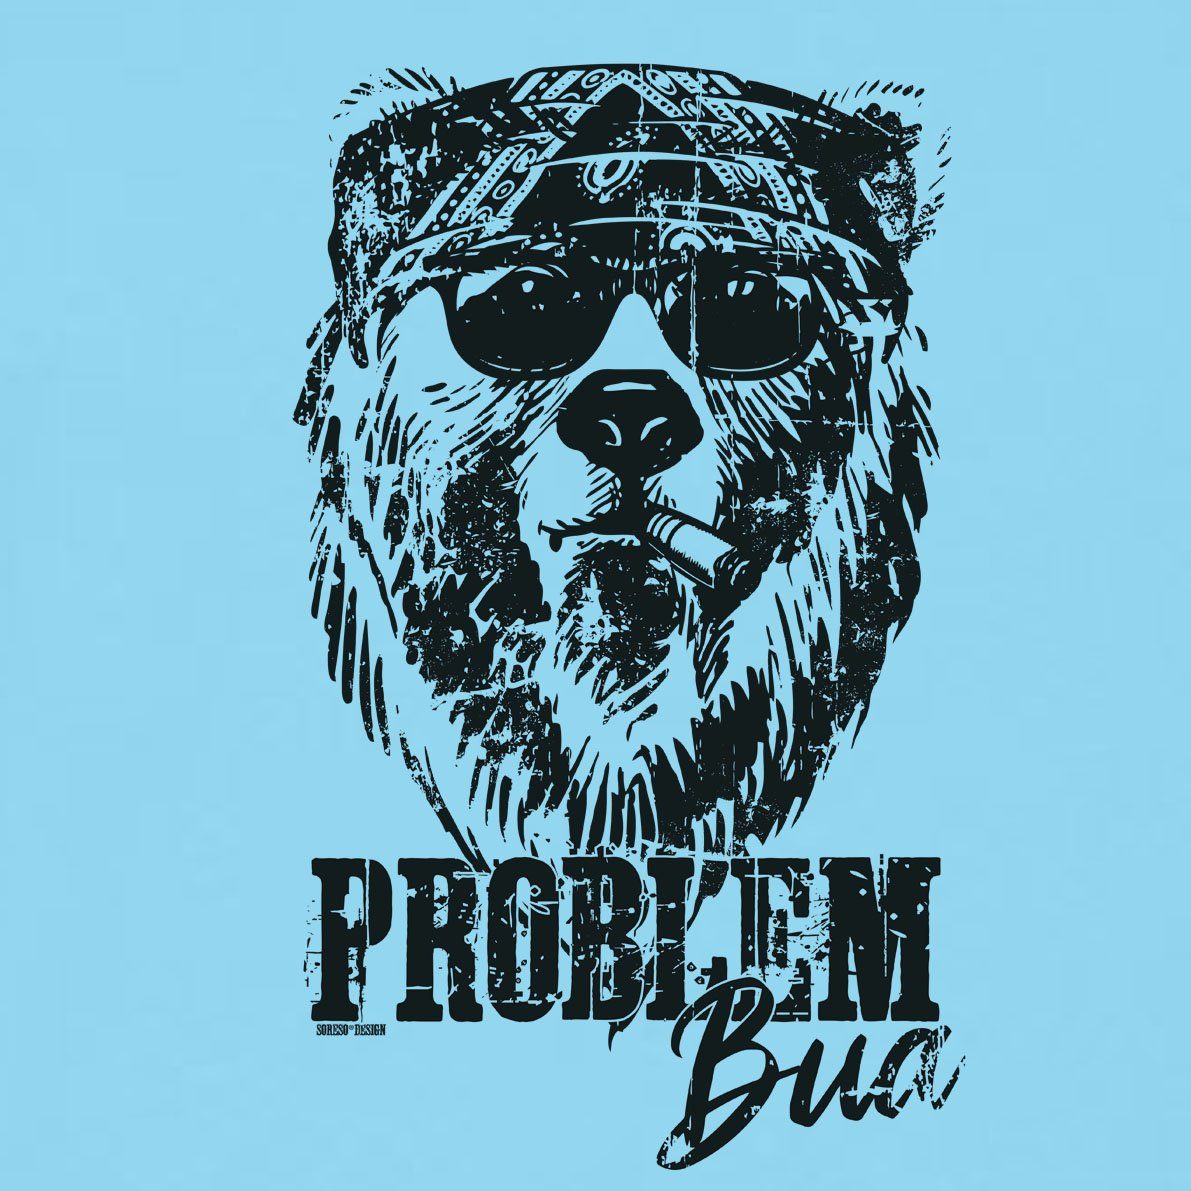 (Ein Problem T-Shirt) hellblau Soreso® Trachtenshirt Männer T-Shirt Herren Trachten T-Shirt Bua